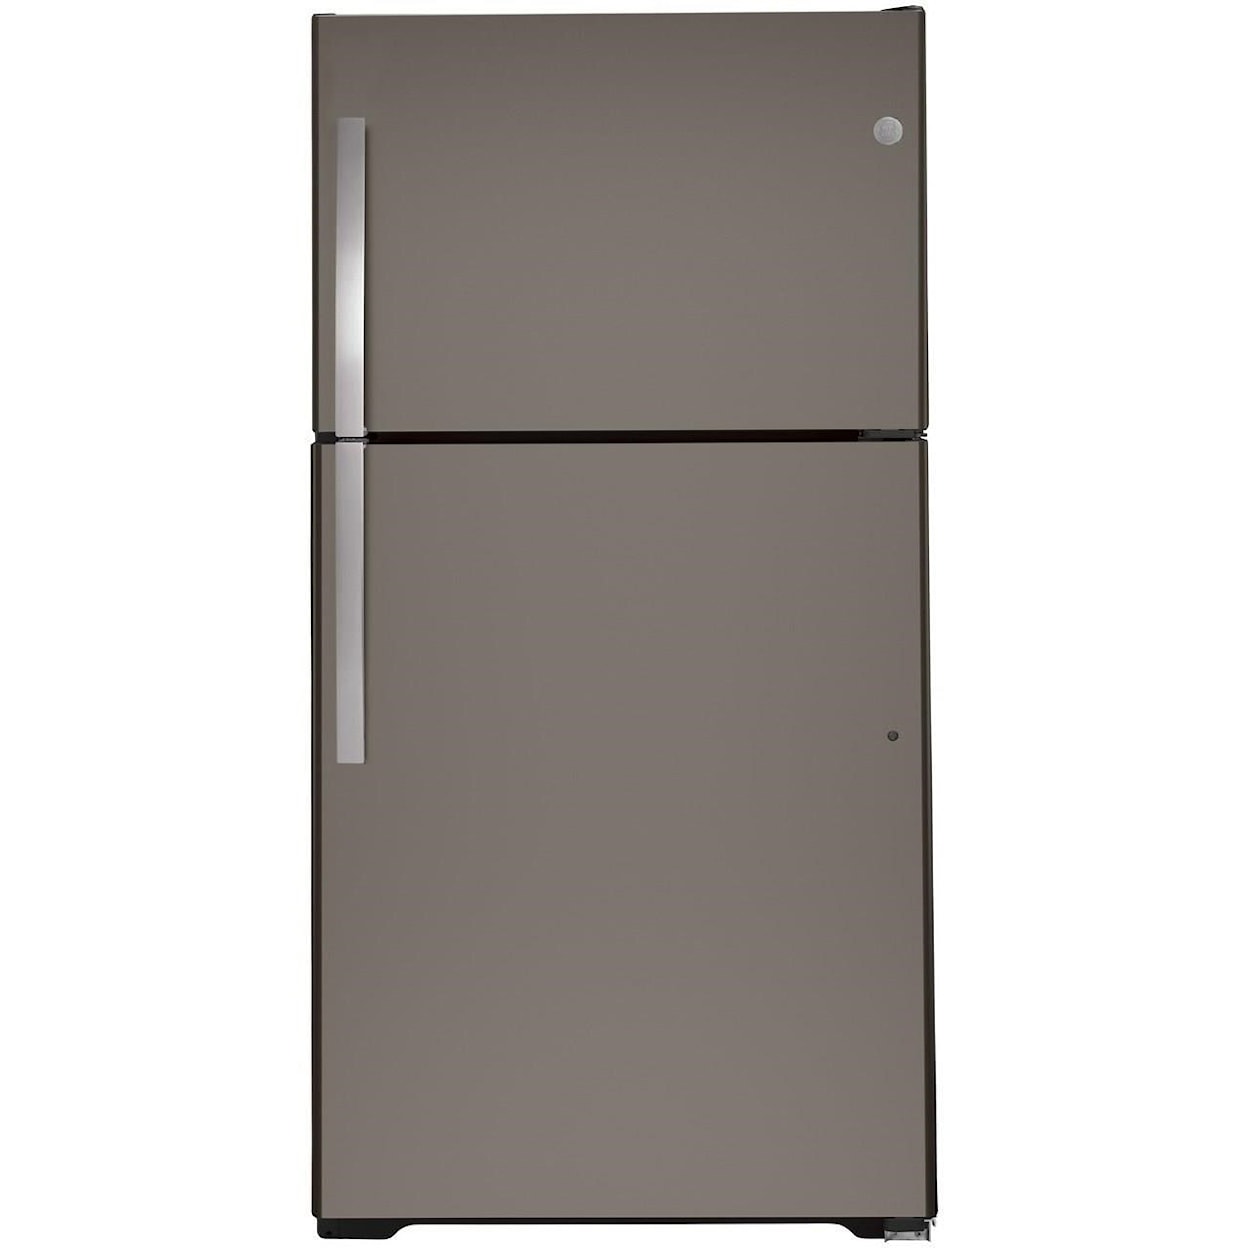 GE Appliances GE Top-Freezer Refrigerators GE® ENERGY STAR® 21.9 Cu. Ft. Top-Freezer Re